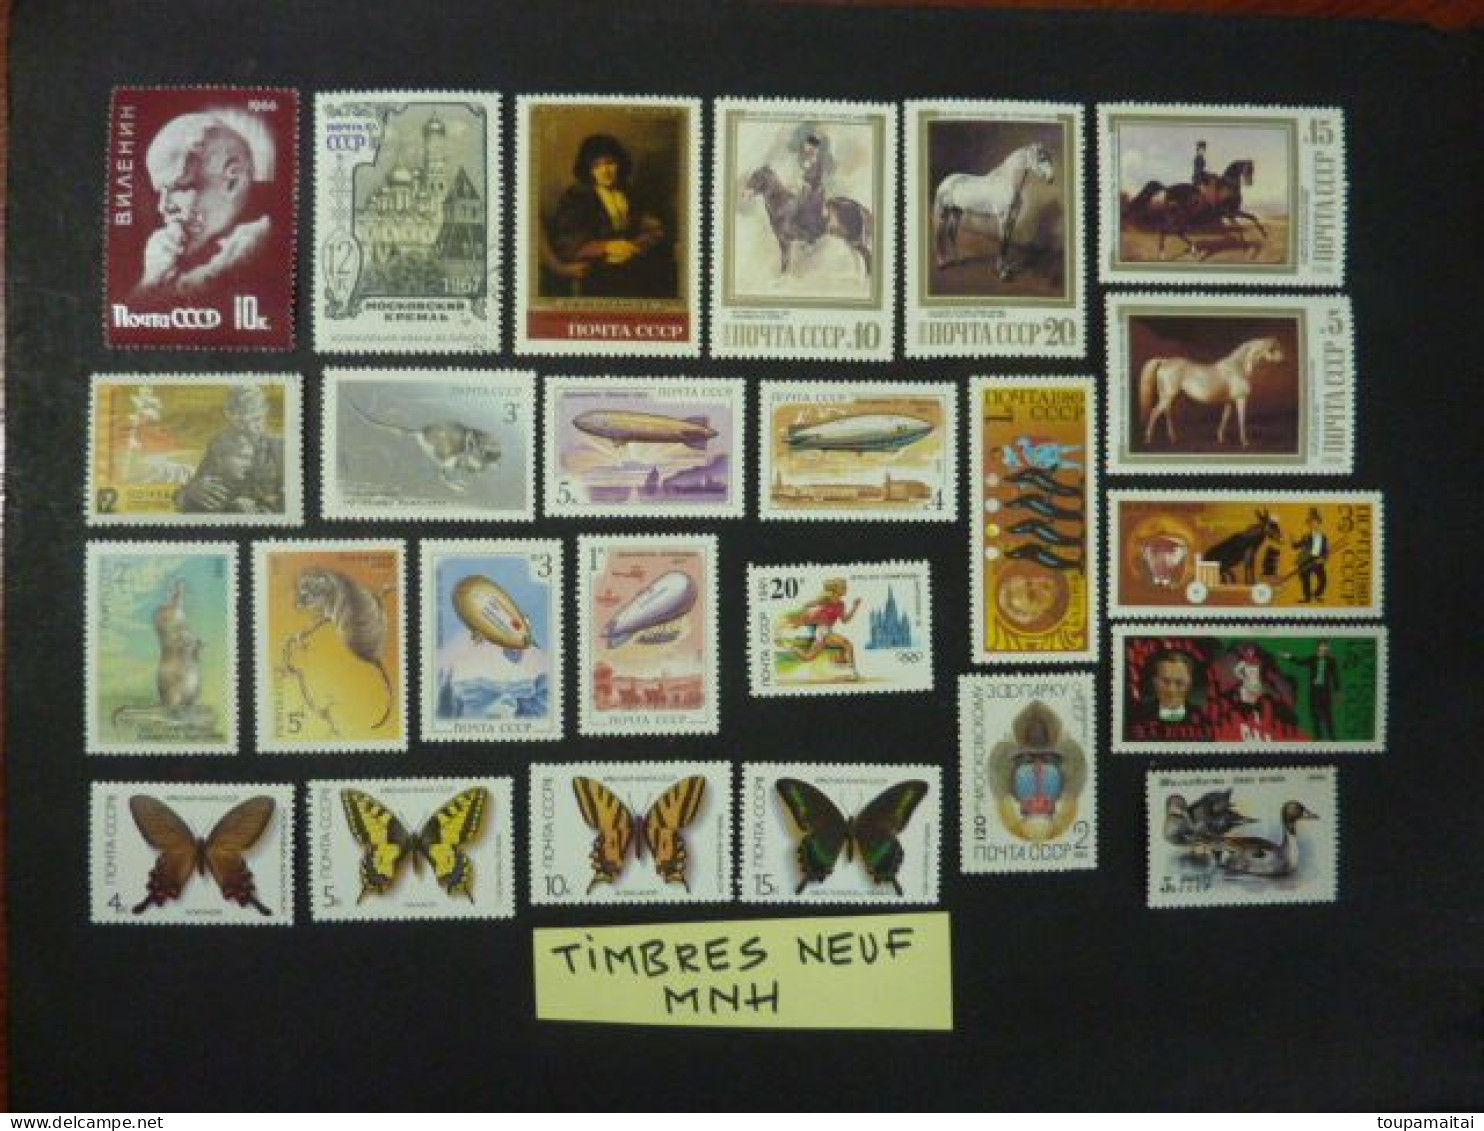 U.R.S.S. LOT de 333 timbres oblitérés tous différents + 25 timbres neufs MNH** tous différents. Voir les 1 photos.